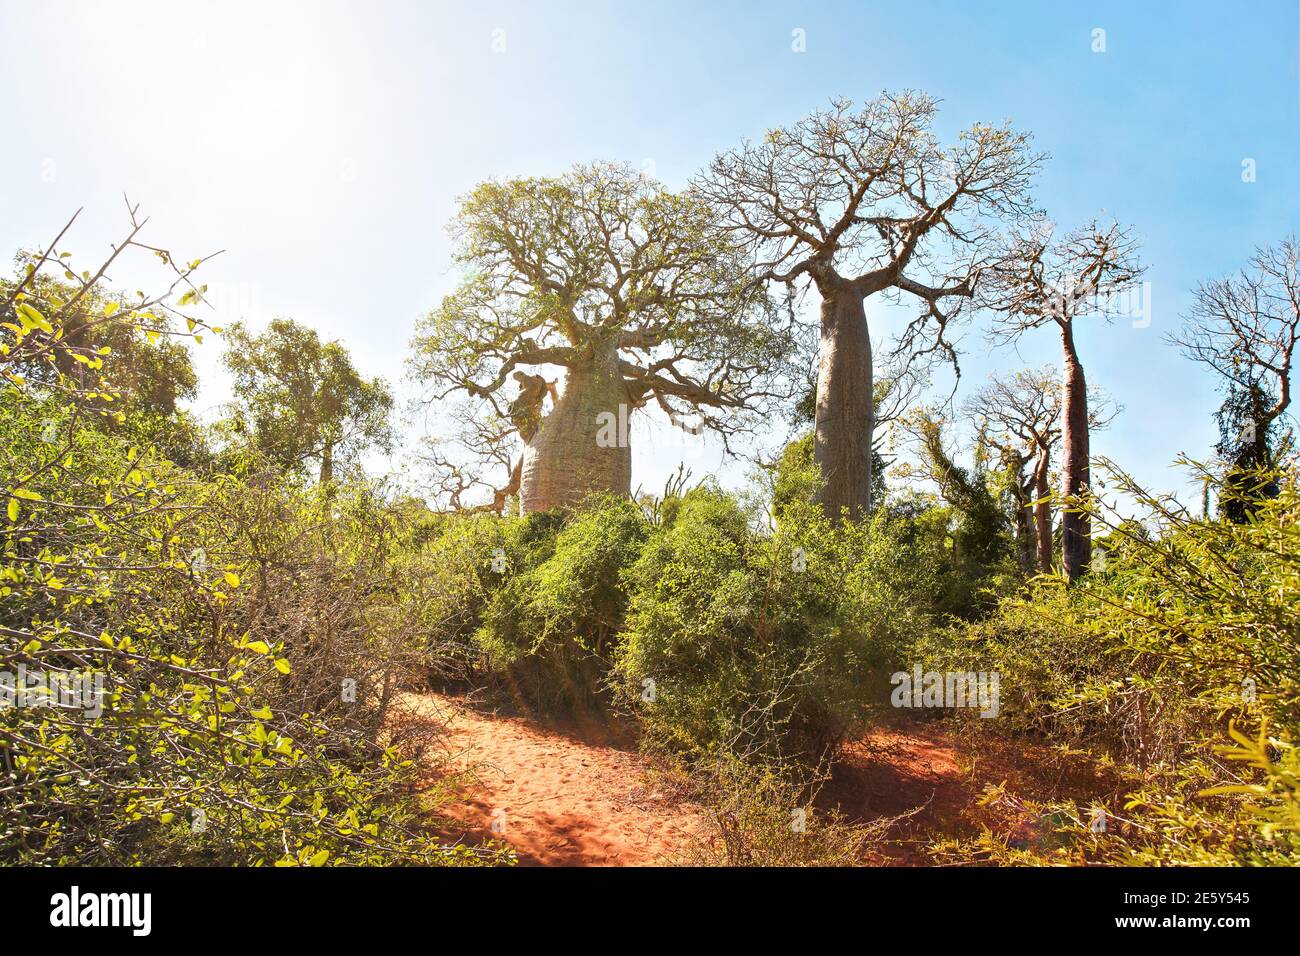 Forêt avec petits baobabs et poulpes, buissons et herbe poussant sur un sol rouge poussiéreux, fort contre-jour de soleil Banque D'Images